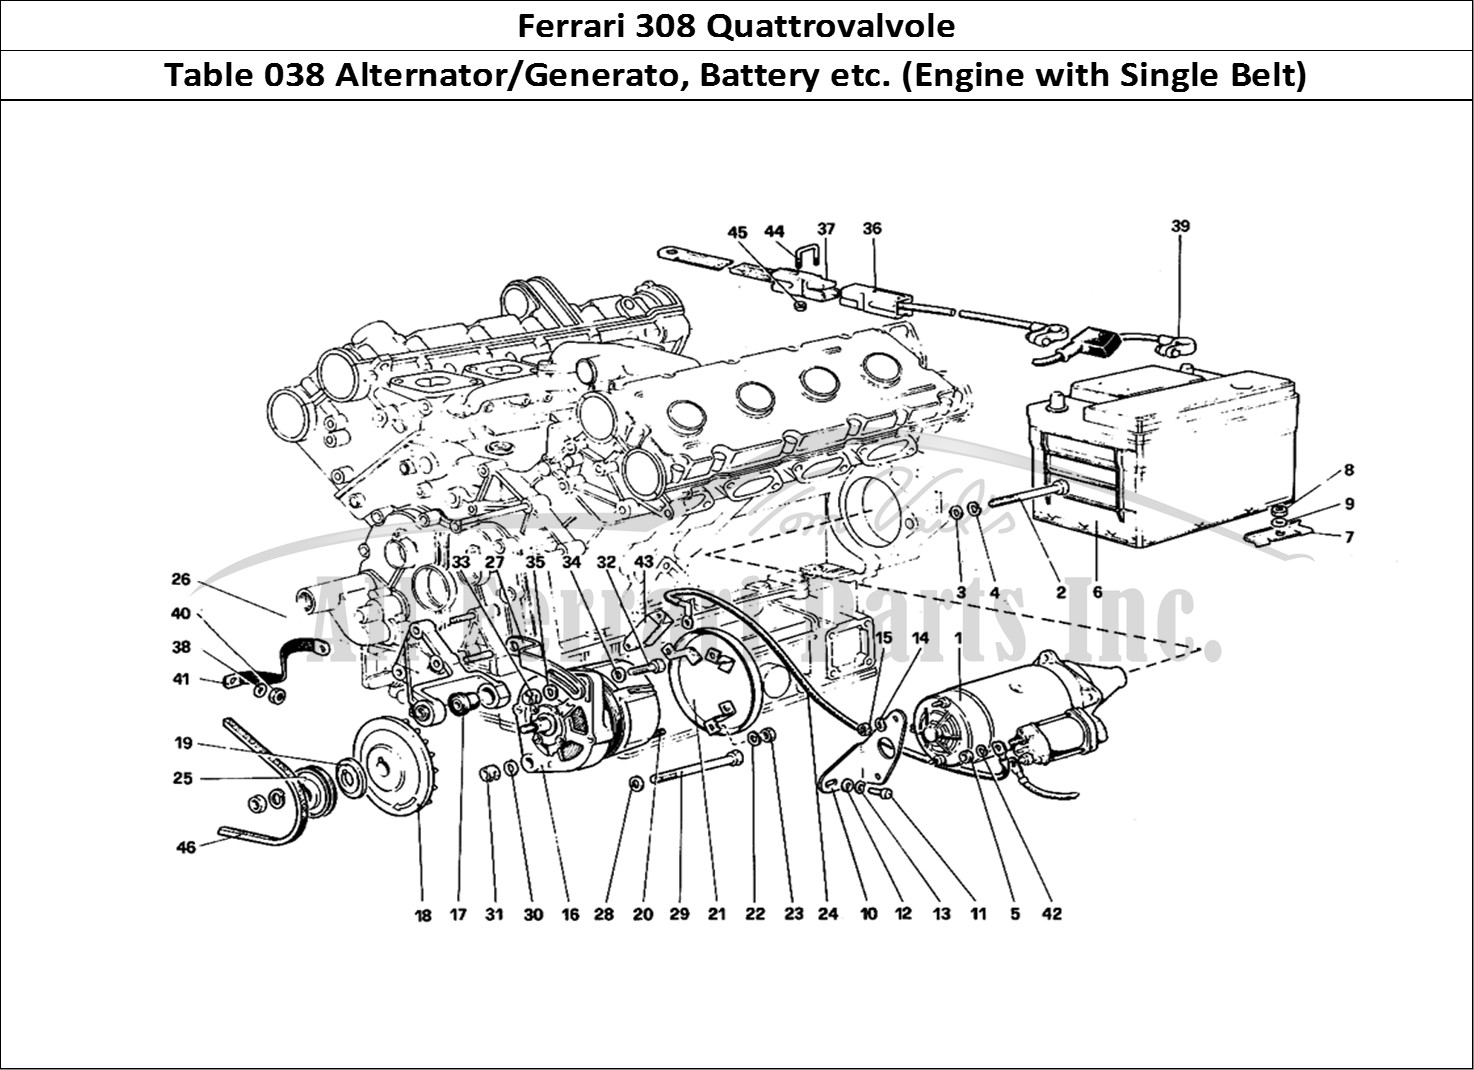 Ferrari Parts Ferrari 308 Quattrovalvole (1985) Page 038 Electric Generating Syste